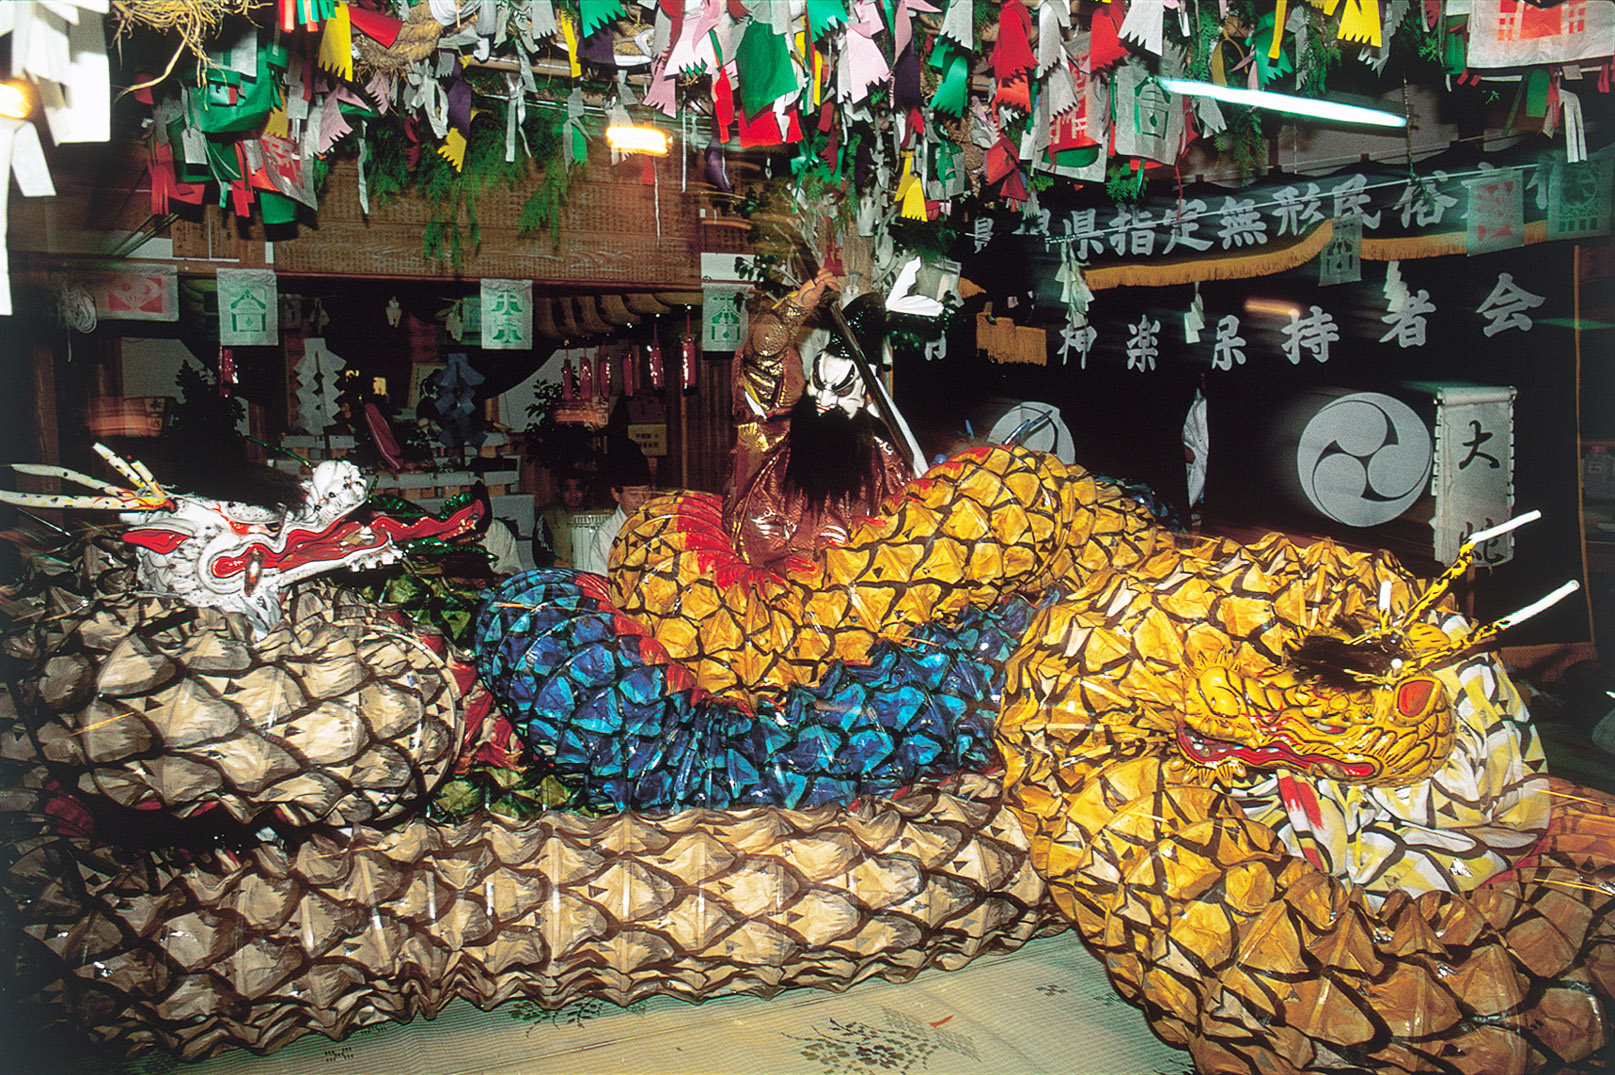 ヤマタノオロチ―島根県の石見神楽の演目「大蛇（おろち）」。スサノオが大蛇を退治する様子が再現される。